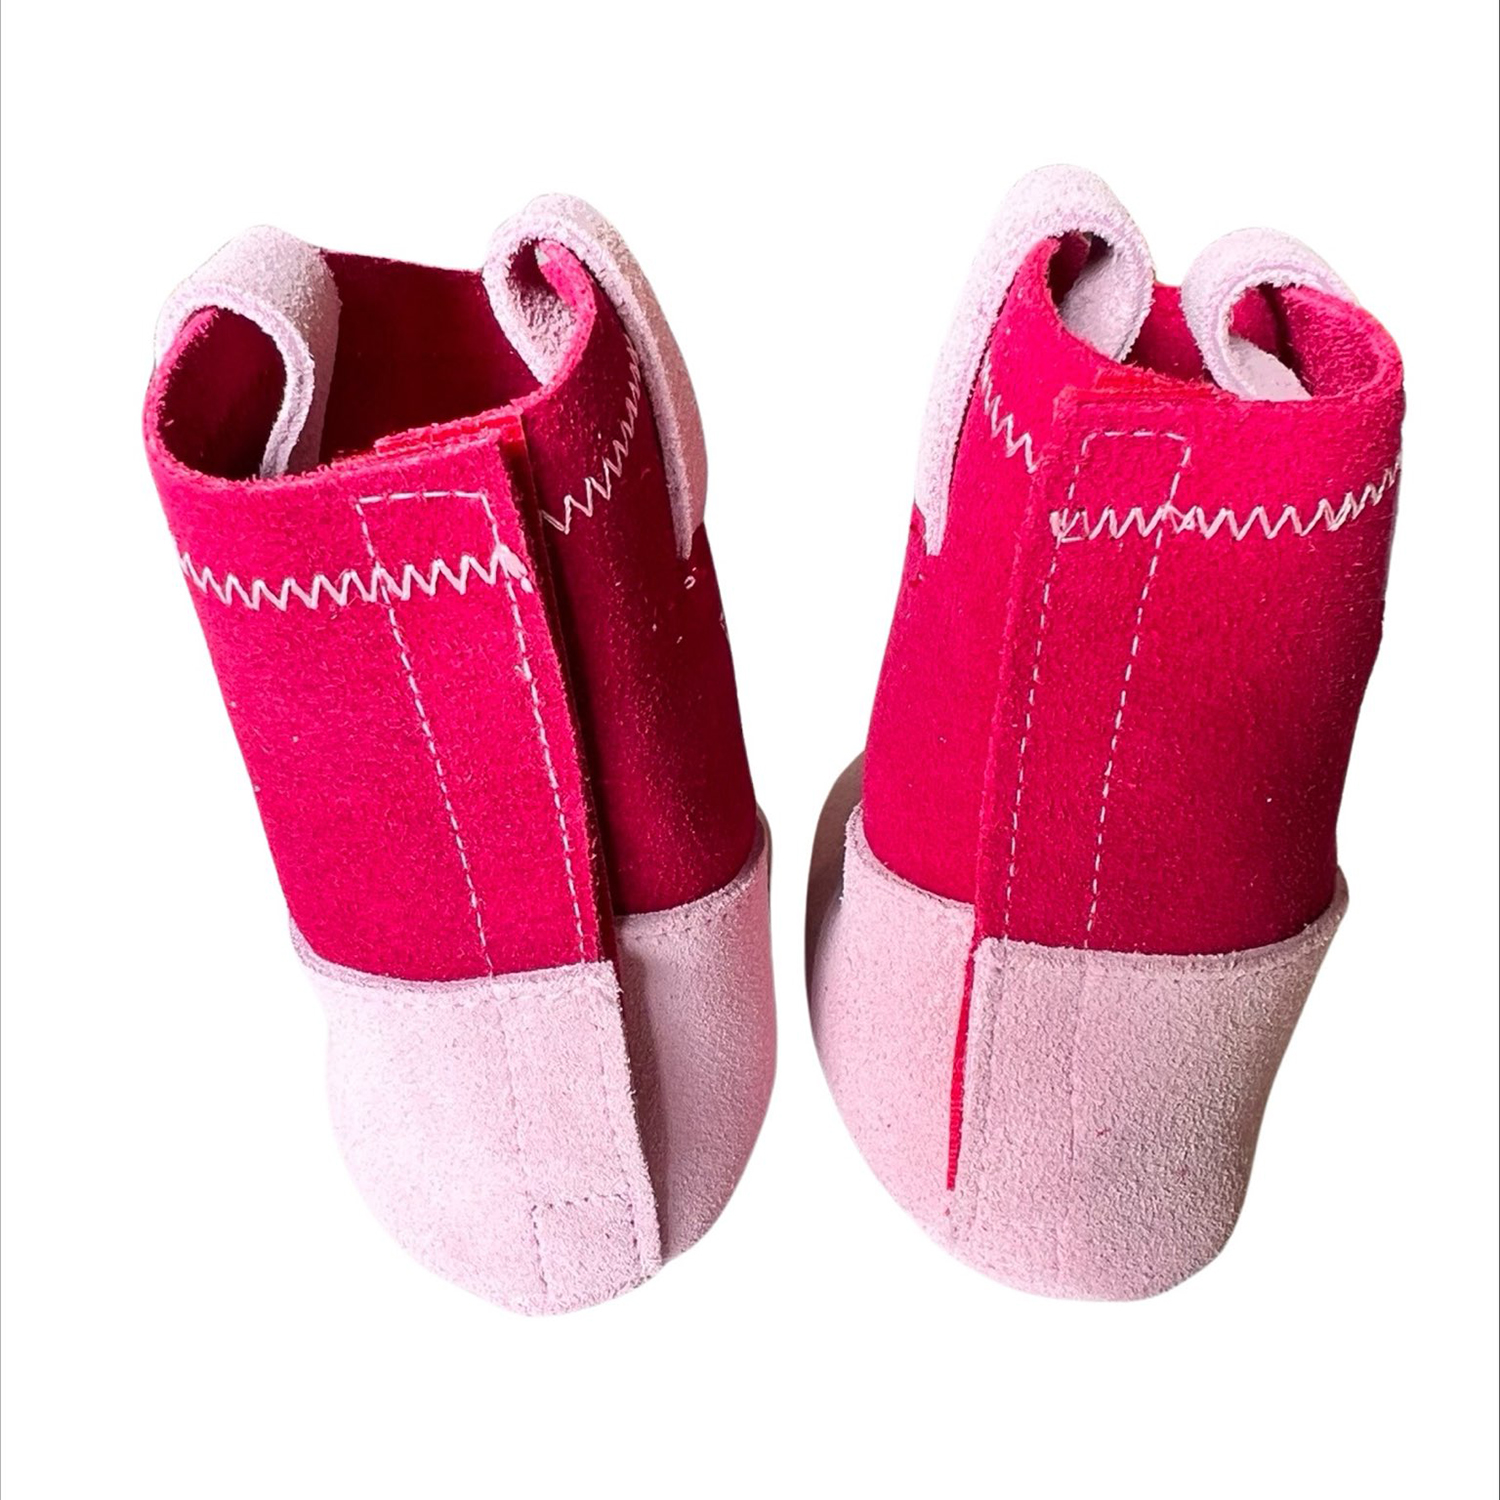 albetta pink boots3